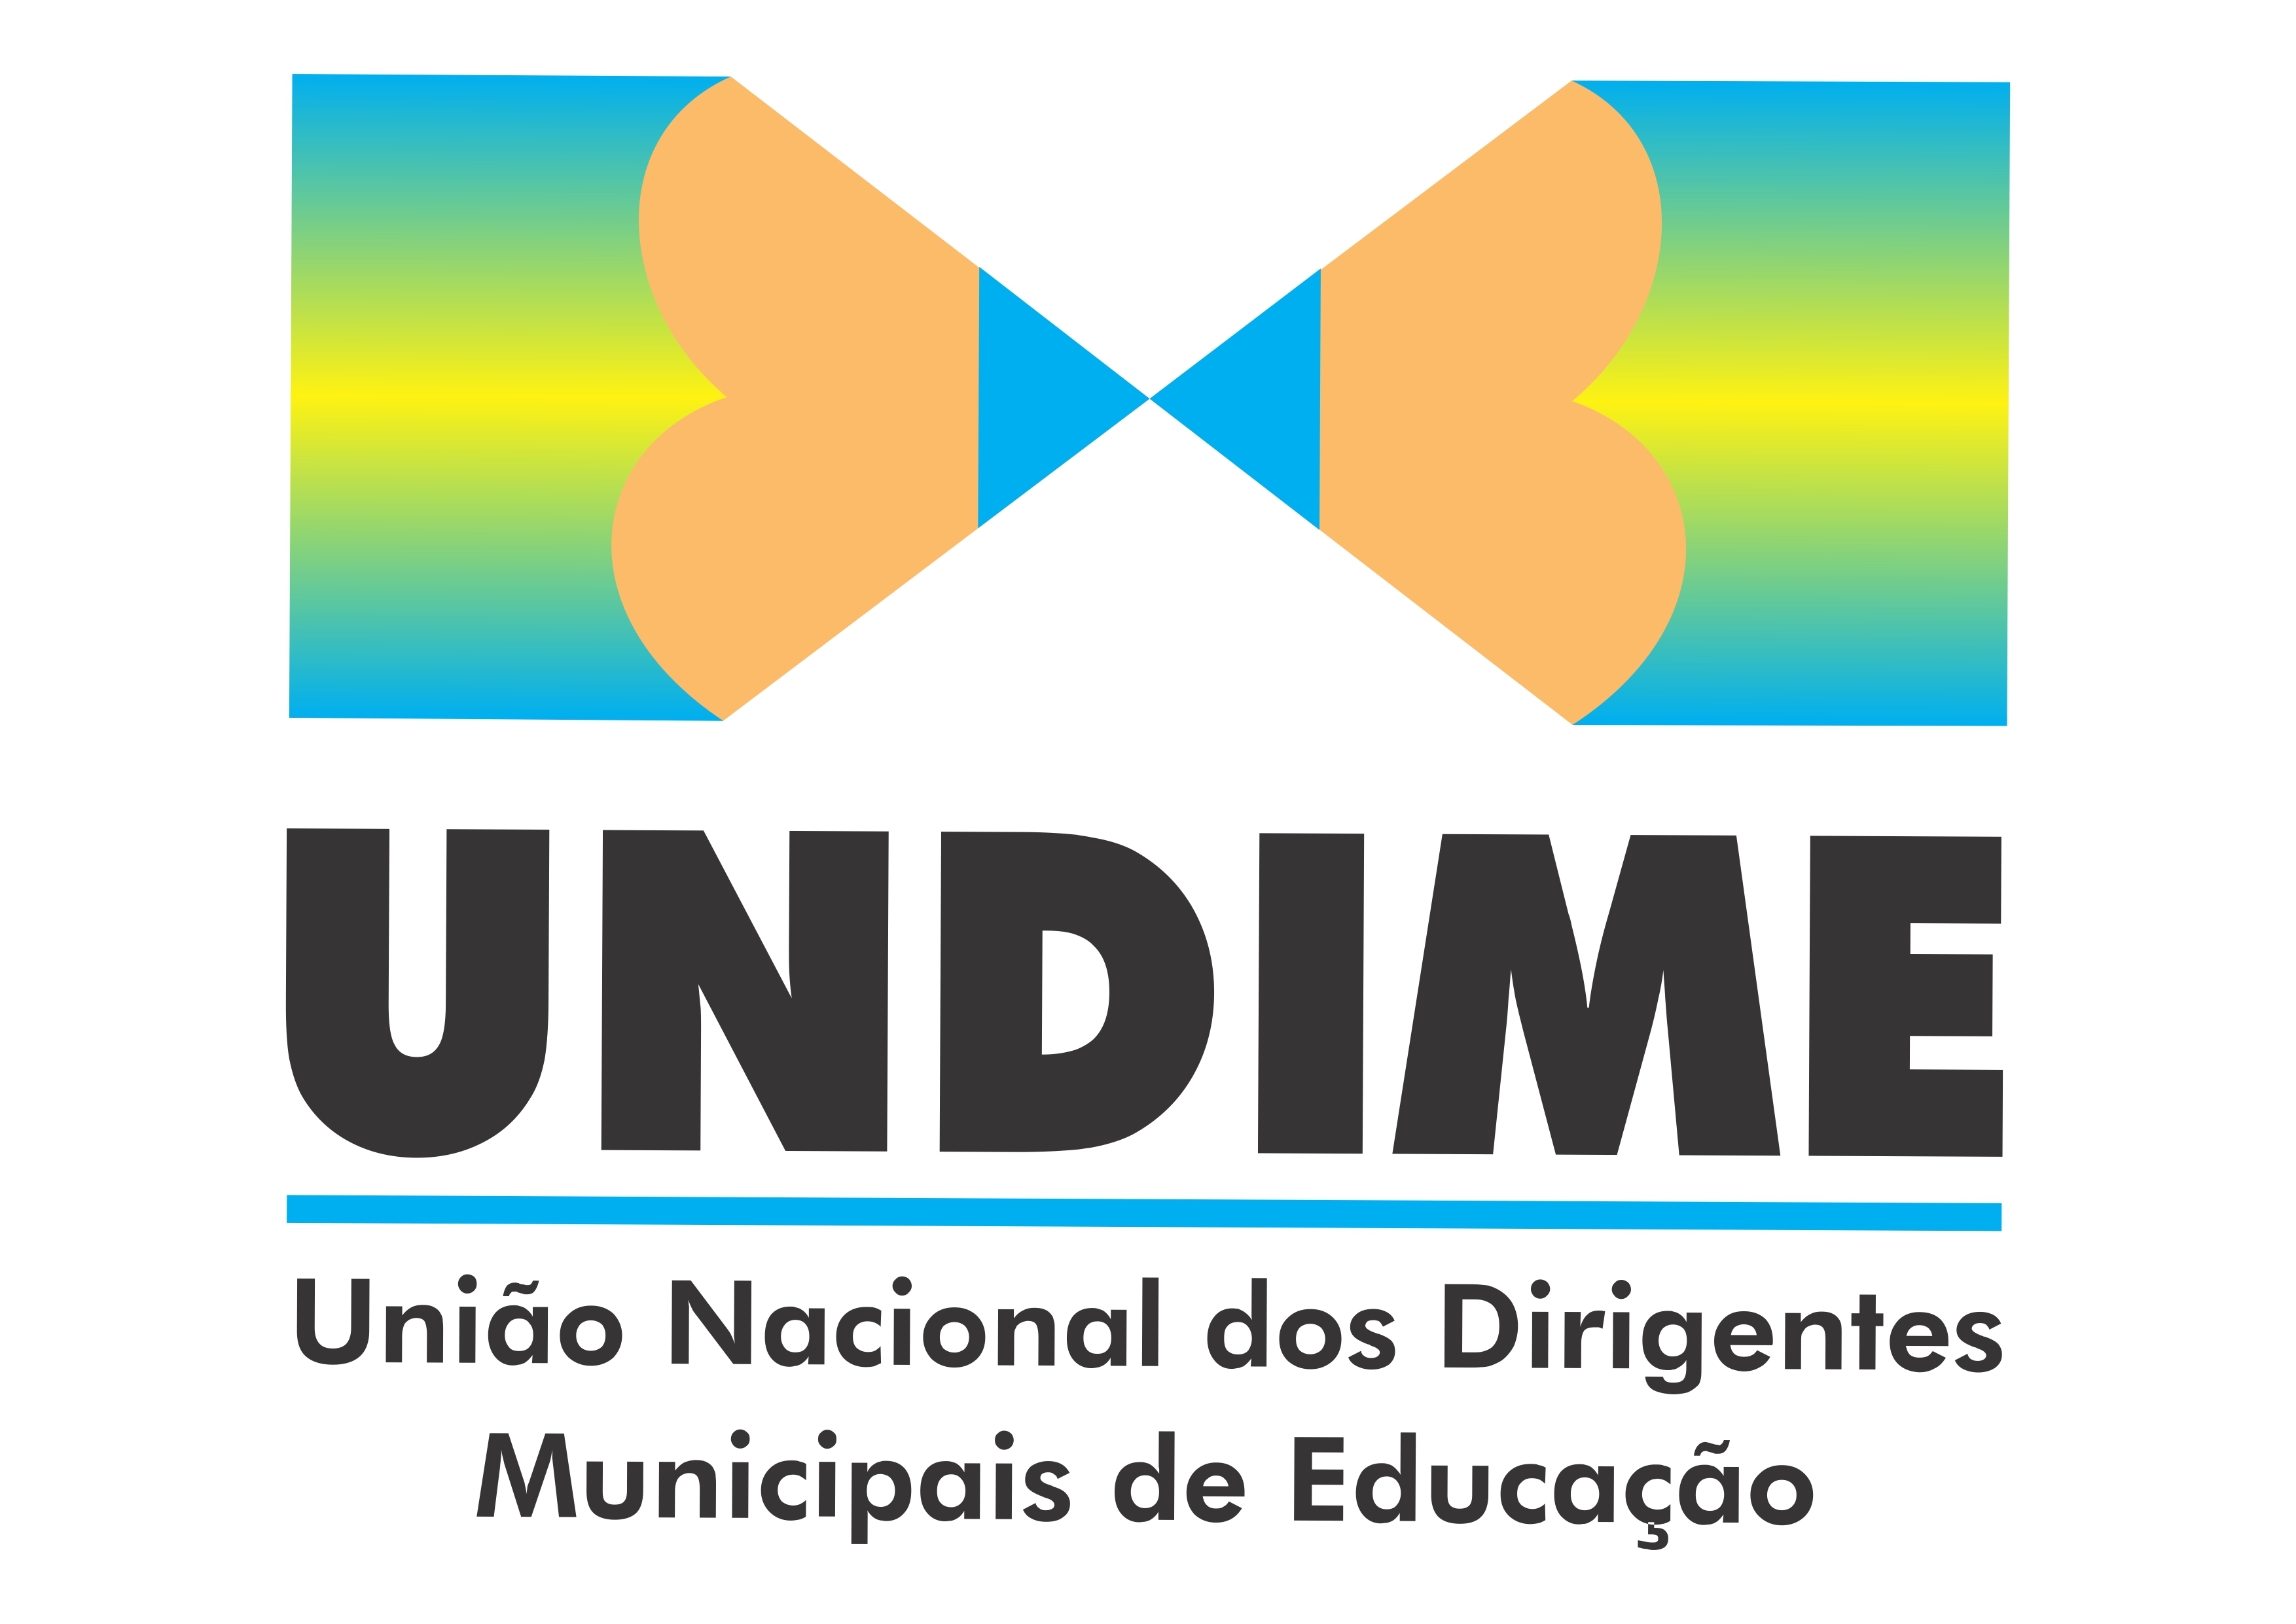 Undime - União Nacional dos Dirigentes Municipais de Educação